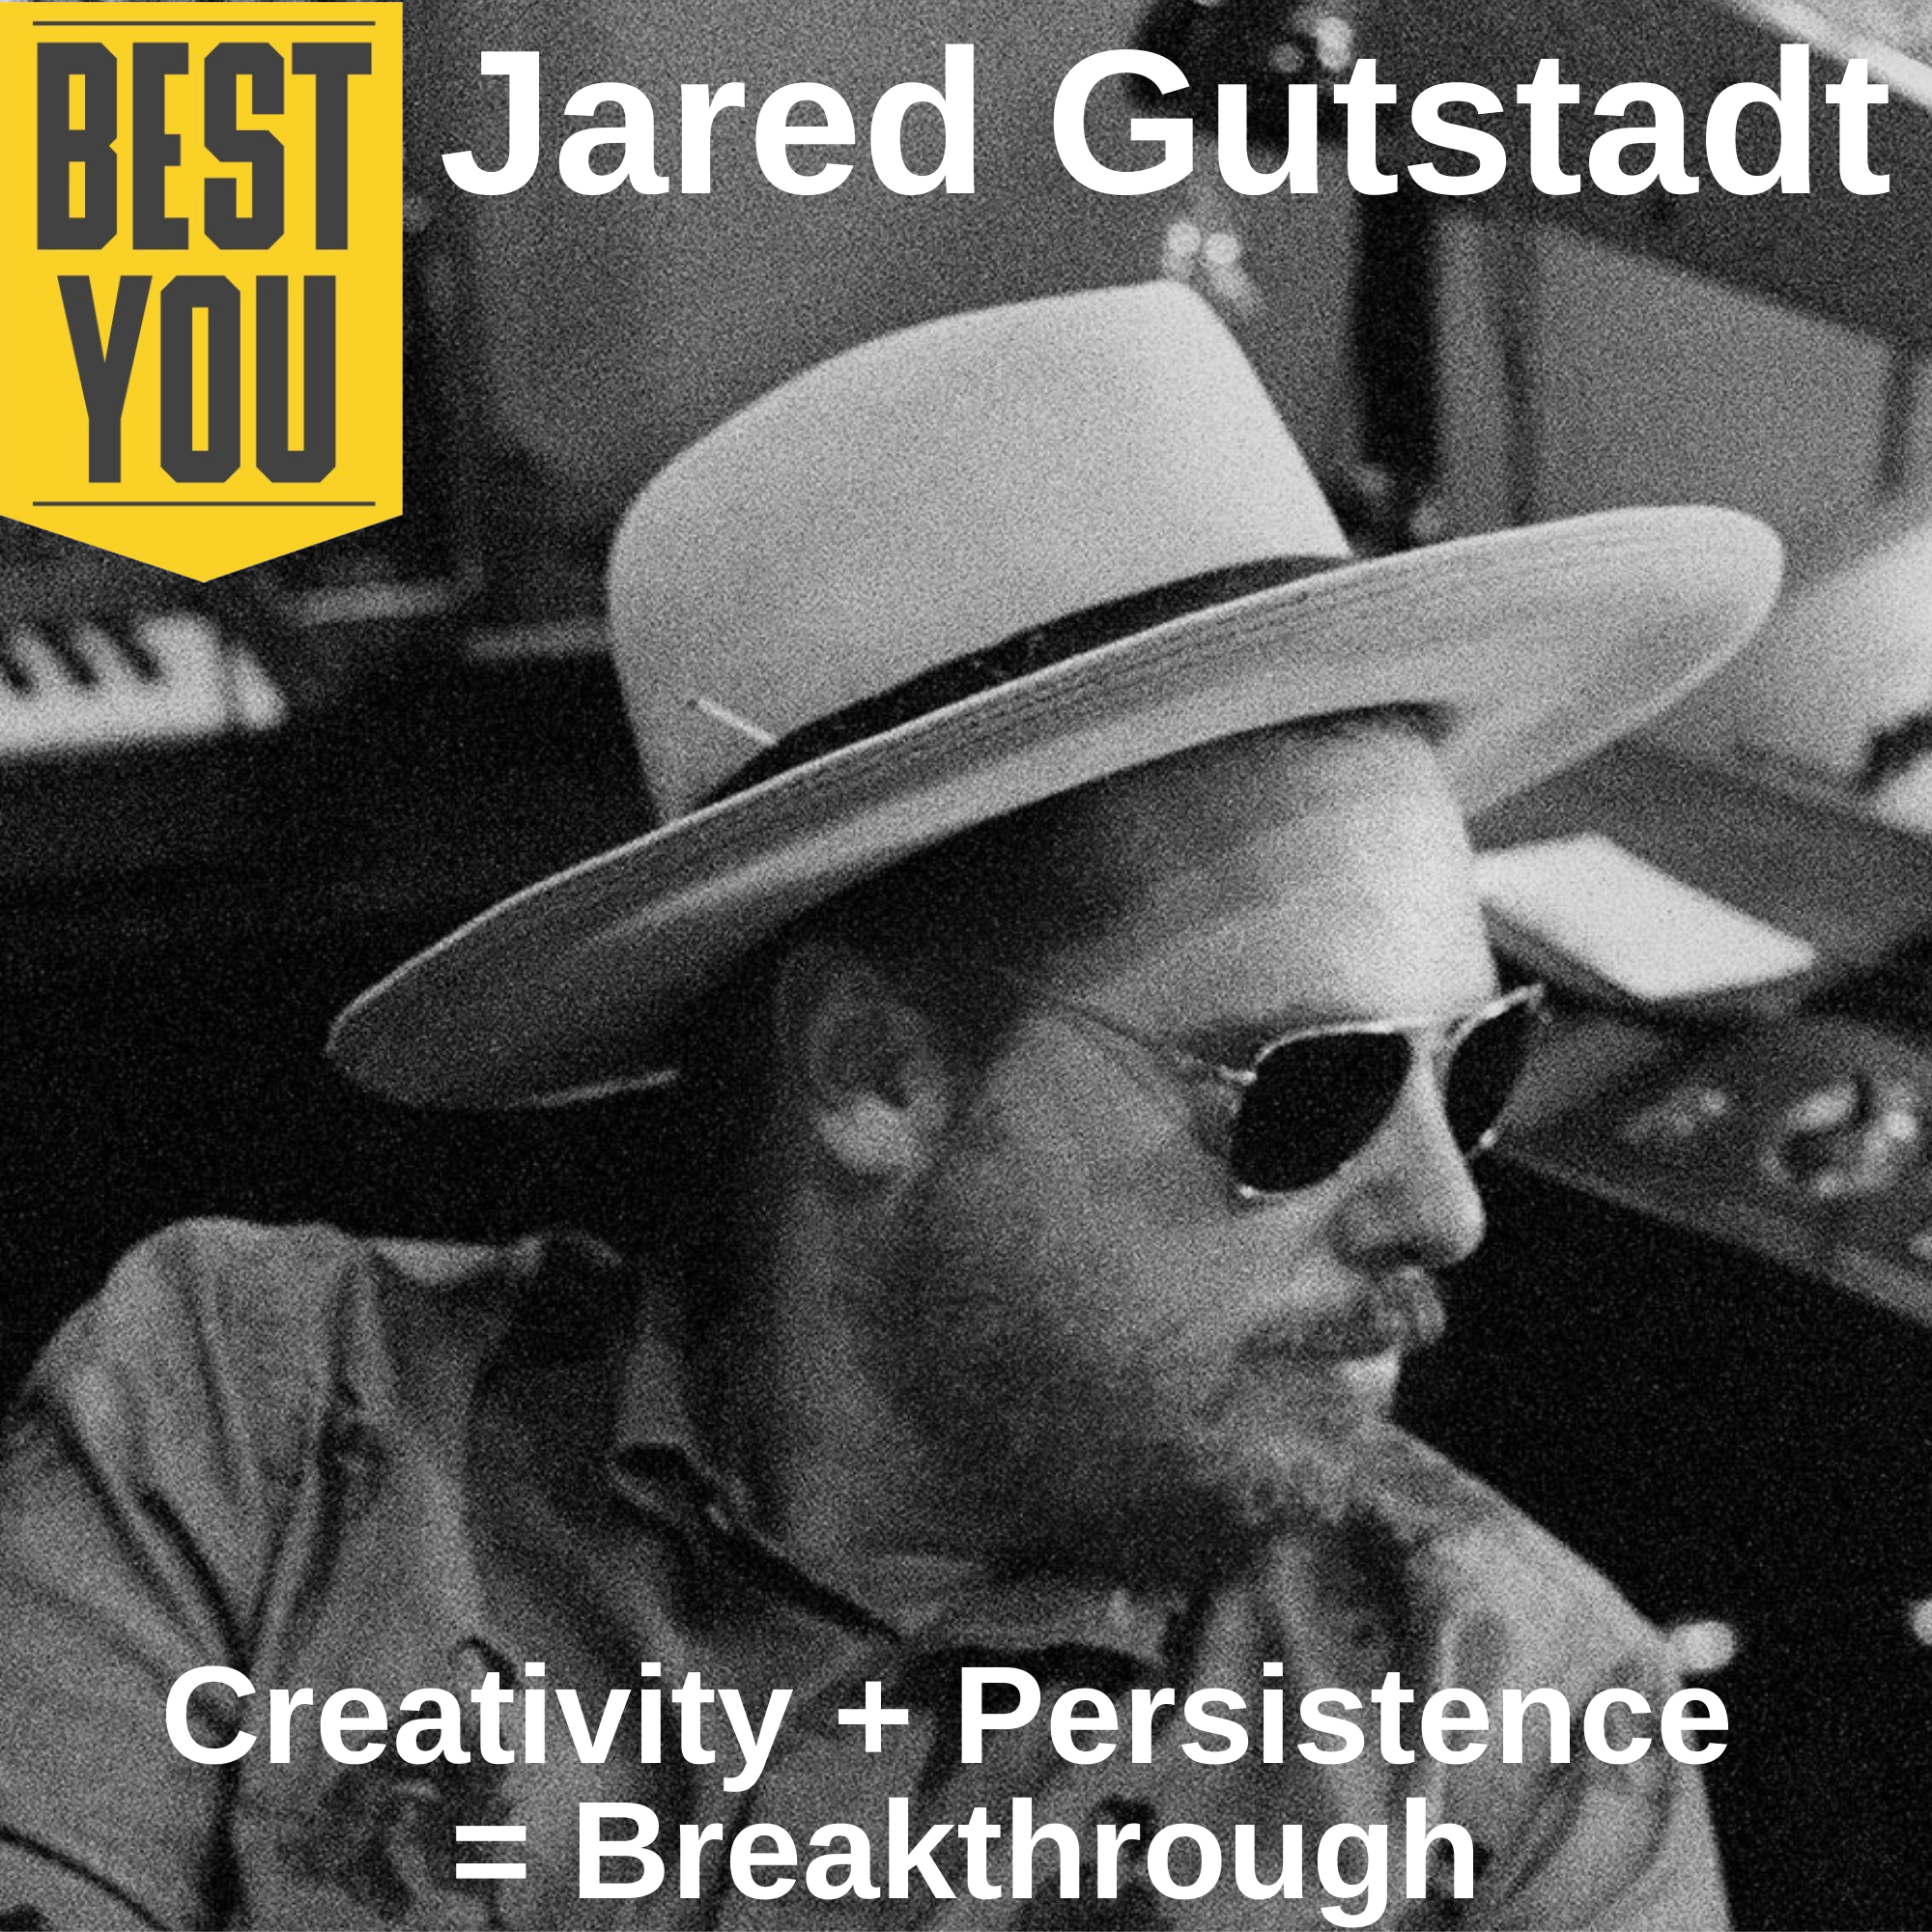 Ep. 171 Jared Gutstadt - Creativity + Persistence = Breakthrough